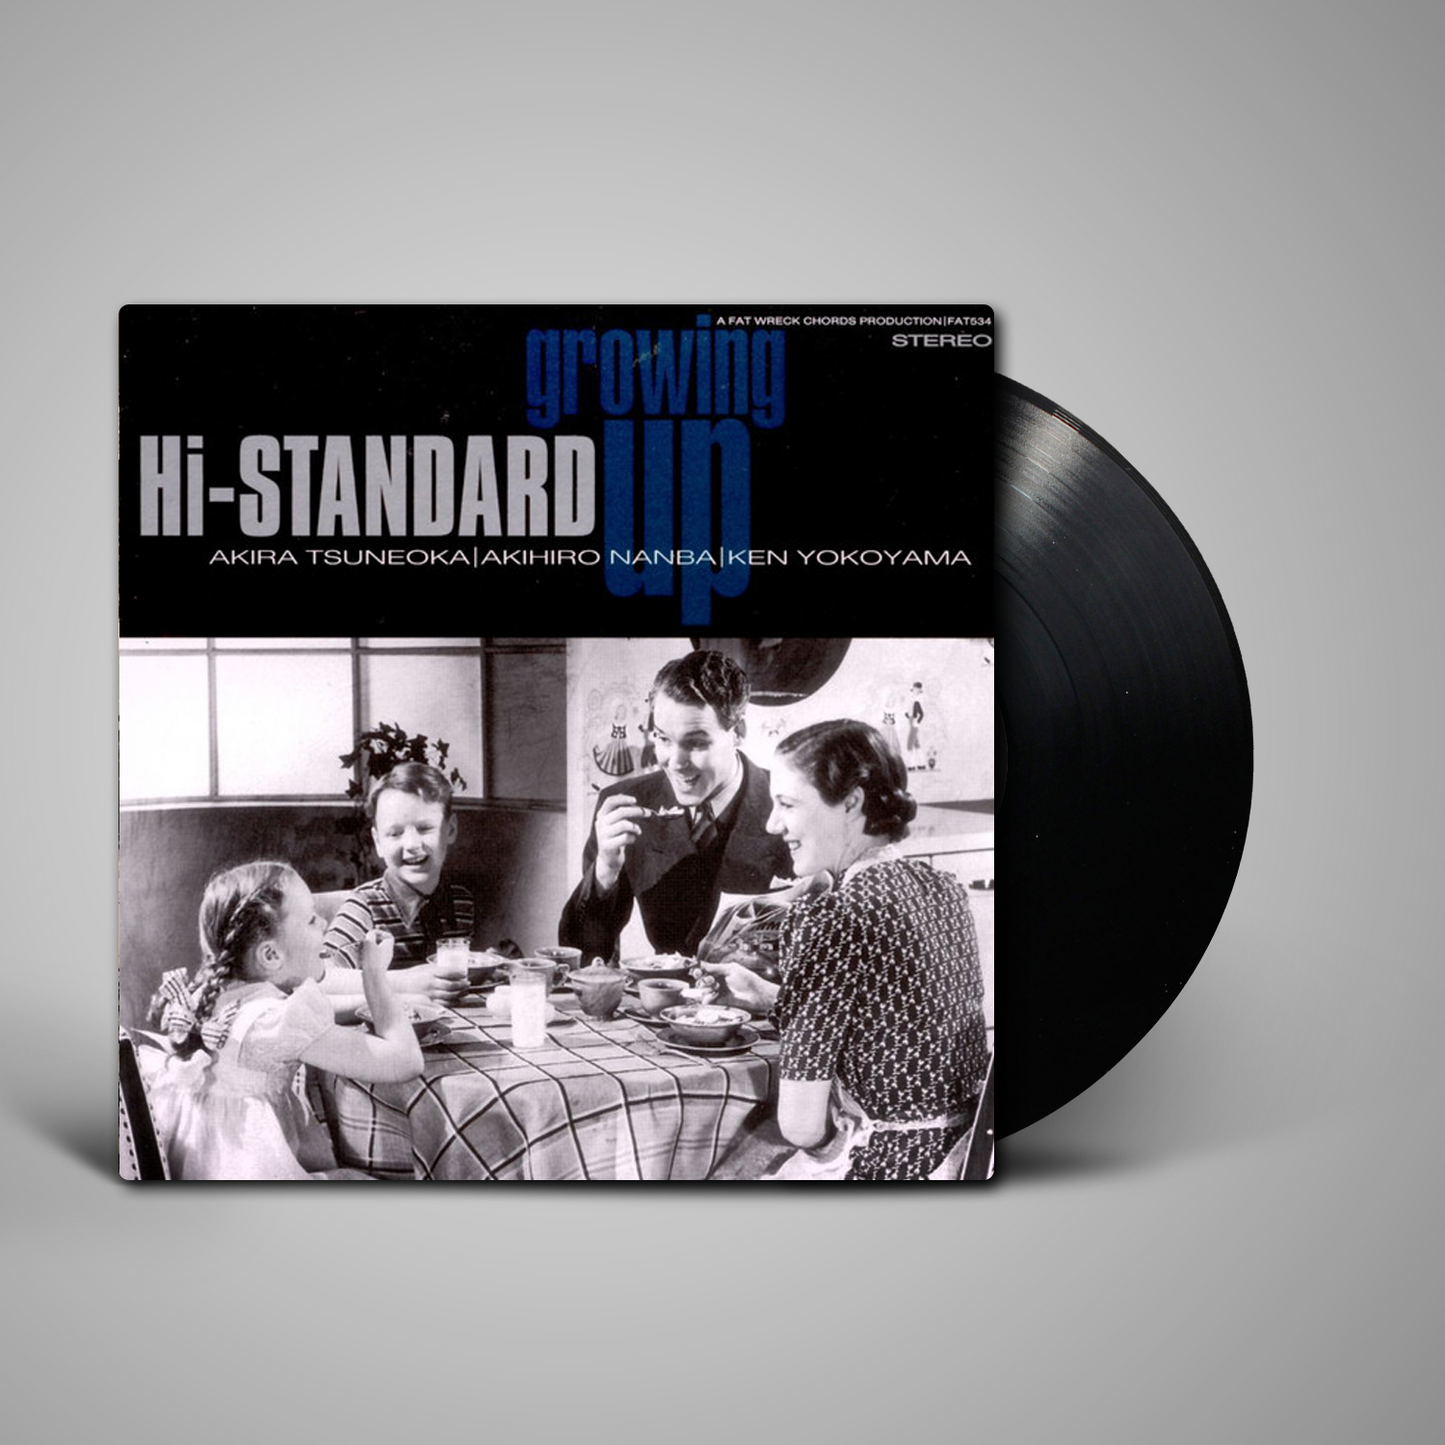 SALE 貴重 レコードLP UP Hi-STANDARD / - 『GROWING UP』 Hi-Standard 